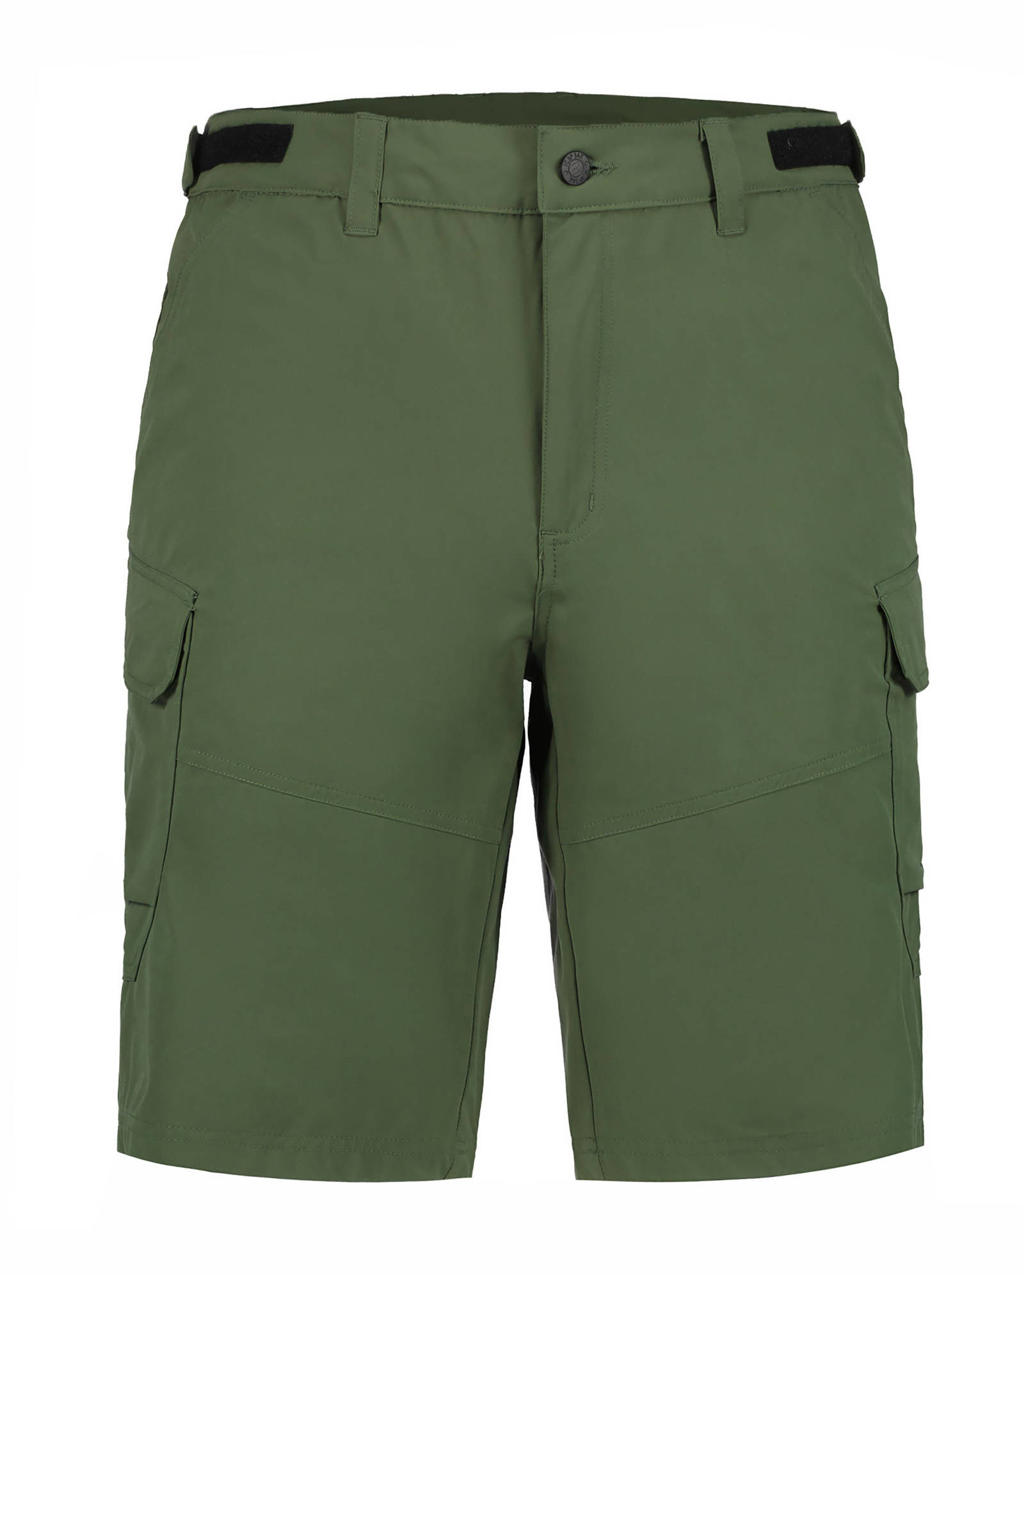 Groene heren Icepeak short Braswell van polyester met regular fit, regular waist en rits- en knoopsluiting